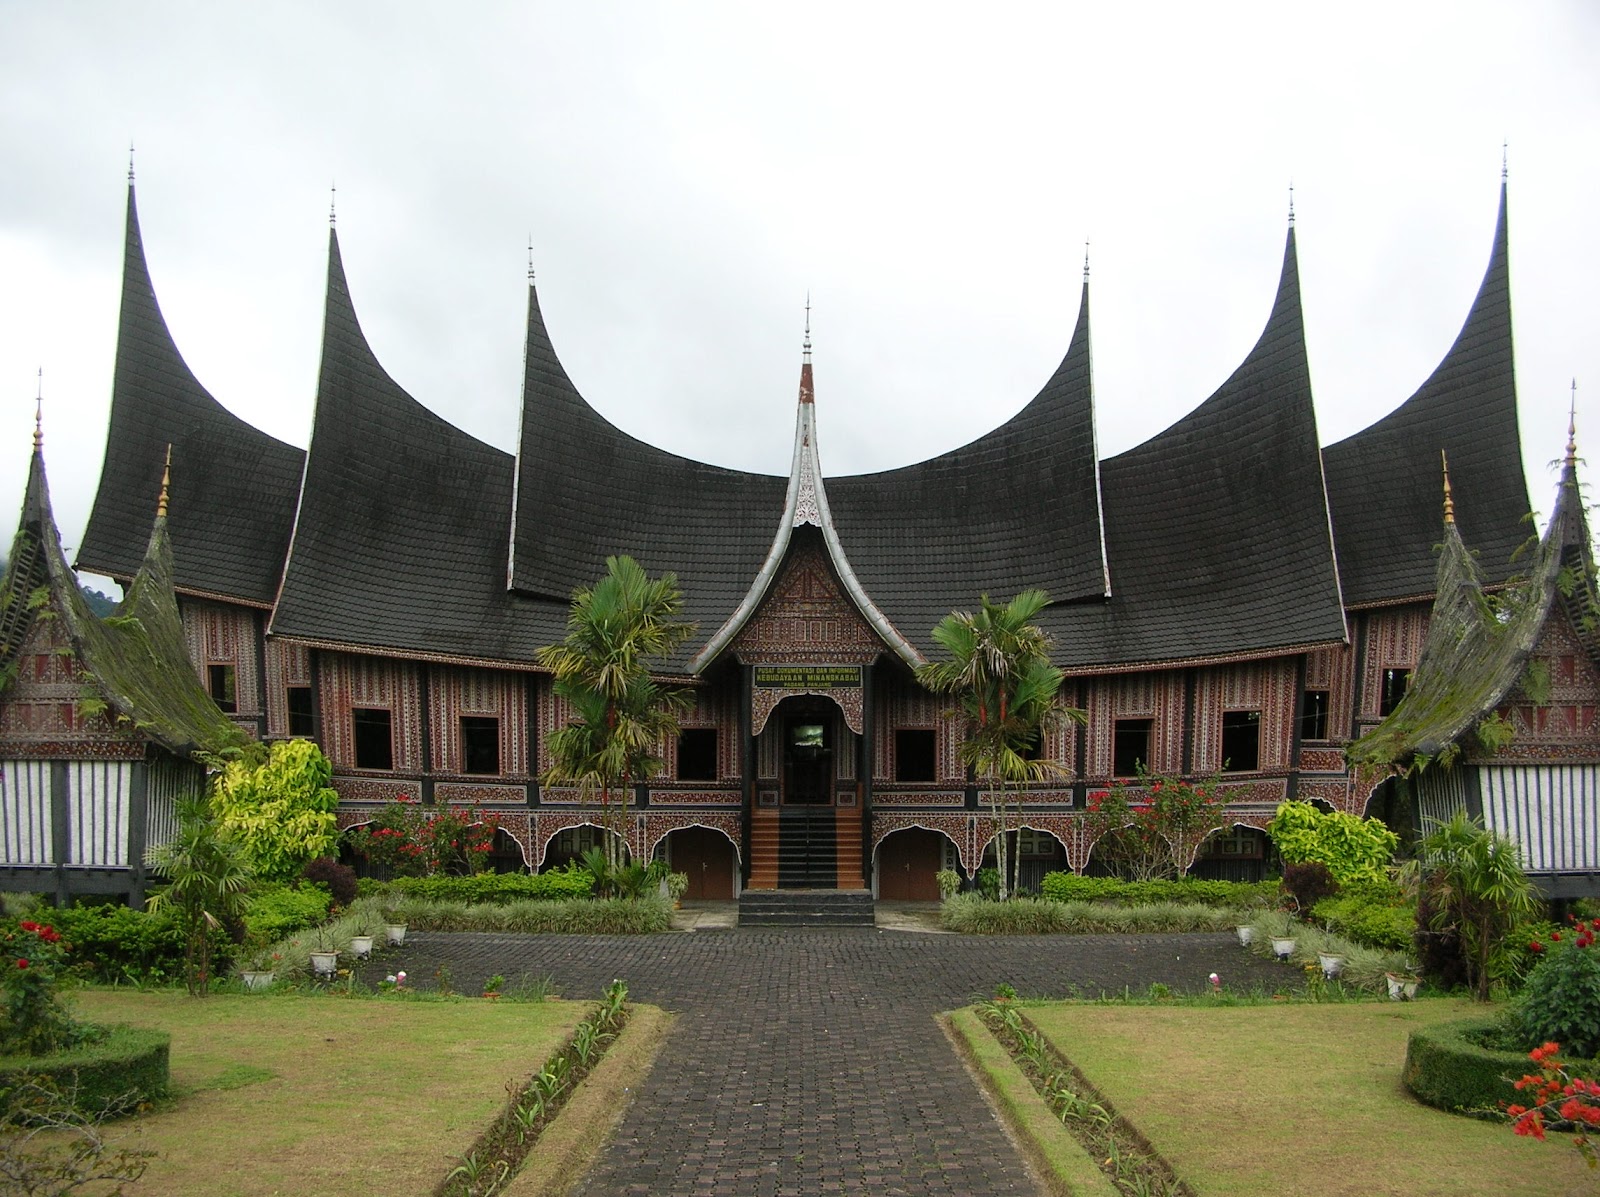 Rumah Adat Sumatra Barat Budaya Indonesia